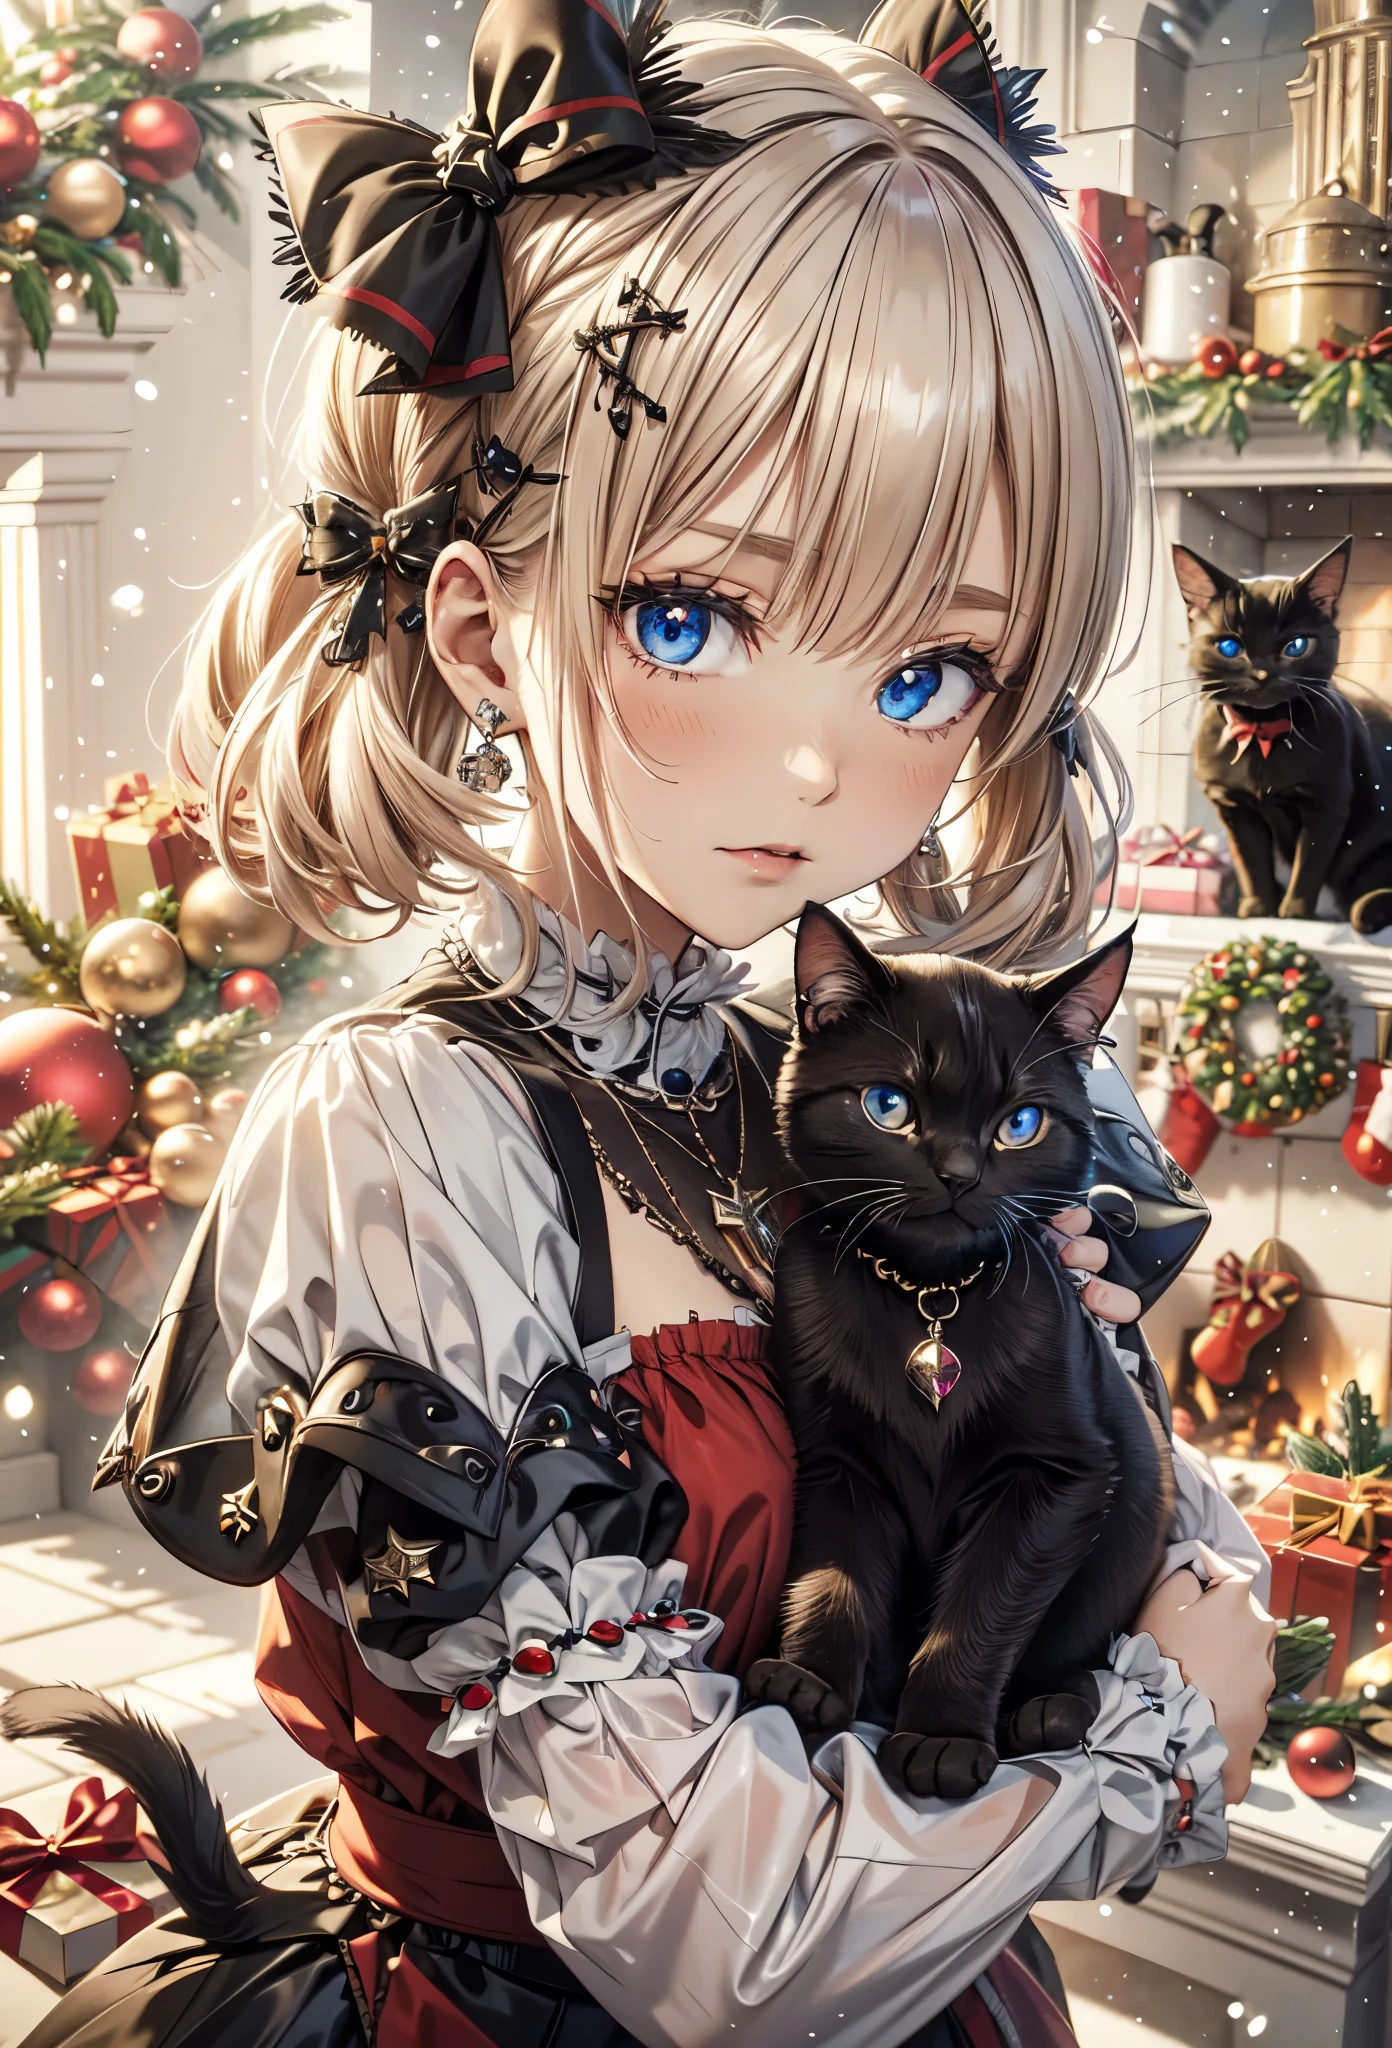 不条理な, 超詳細な,明るい色, ショートヘア,ふわふわの短いツインテールのブロンドの髪:1.2)輝く髪,(ゴシックロリータ:1.5),(暖炉のある部屋でクリスマスを祝いましょう:1.2),(キスフェイス:1.3),(クリスマスツリー),クリスマスの飾り,(照明光),(たくさんの黒猫:1.3),繊細で美しい顔, 赤面、(深い青い目:1.5), 白い肌, ヘアクリップ, イヤリング, ネックレス,